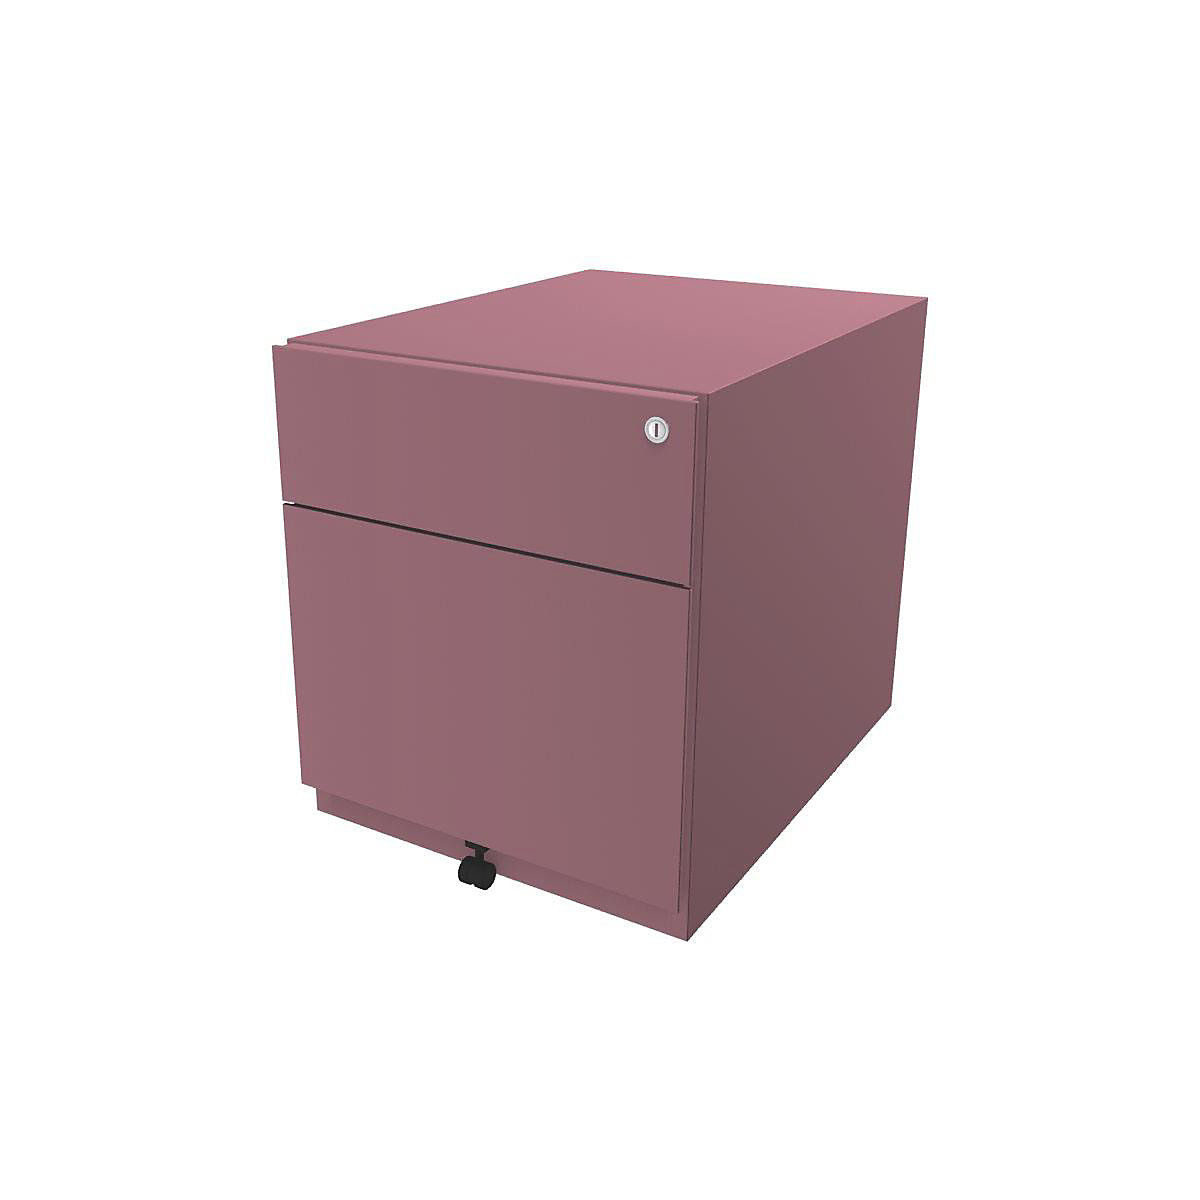 Rollcontainer Note™, mit 1 Hängeregistratur, 1 Universalschublade BISLEY, HxBxT 495 x 420 x 565 mm, mit Griffleiste, pink-12